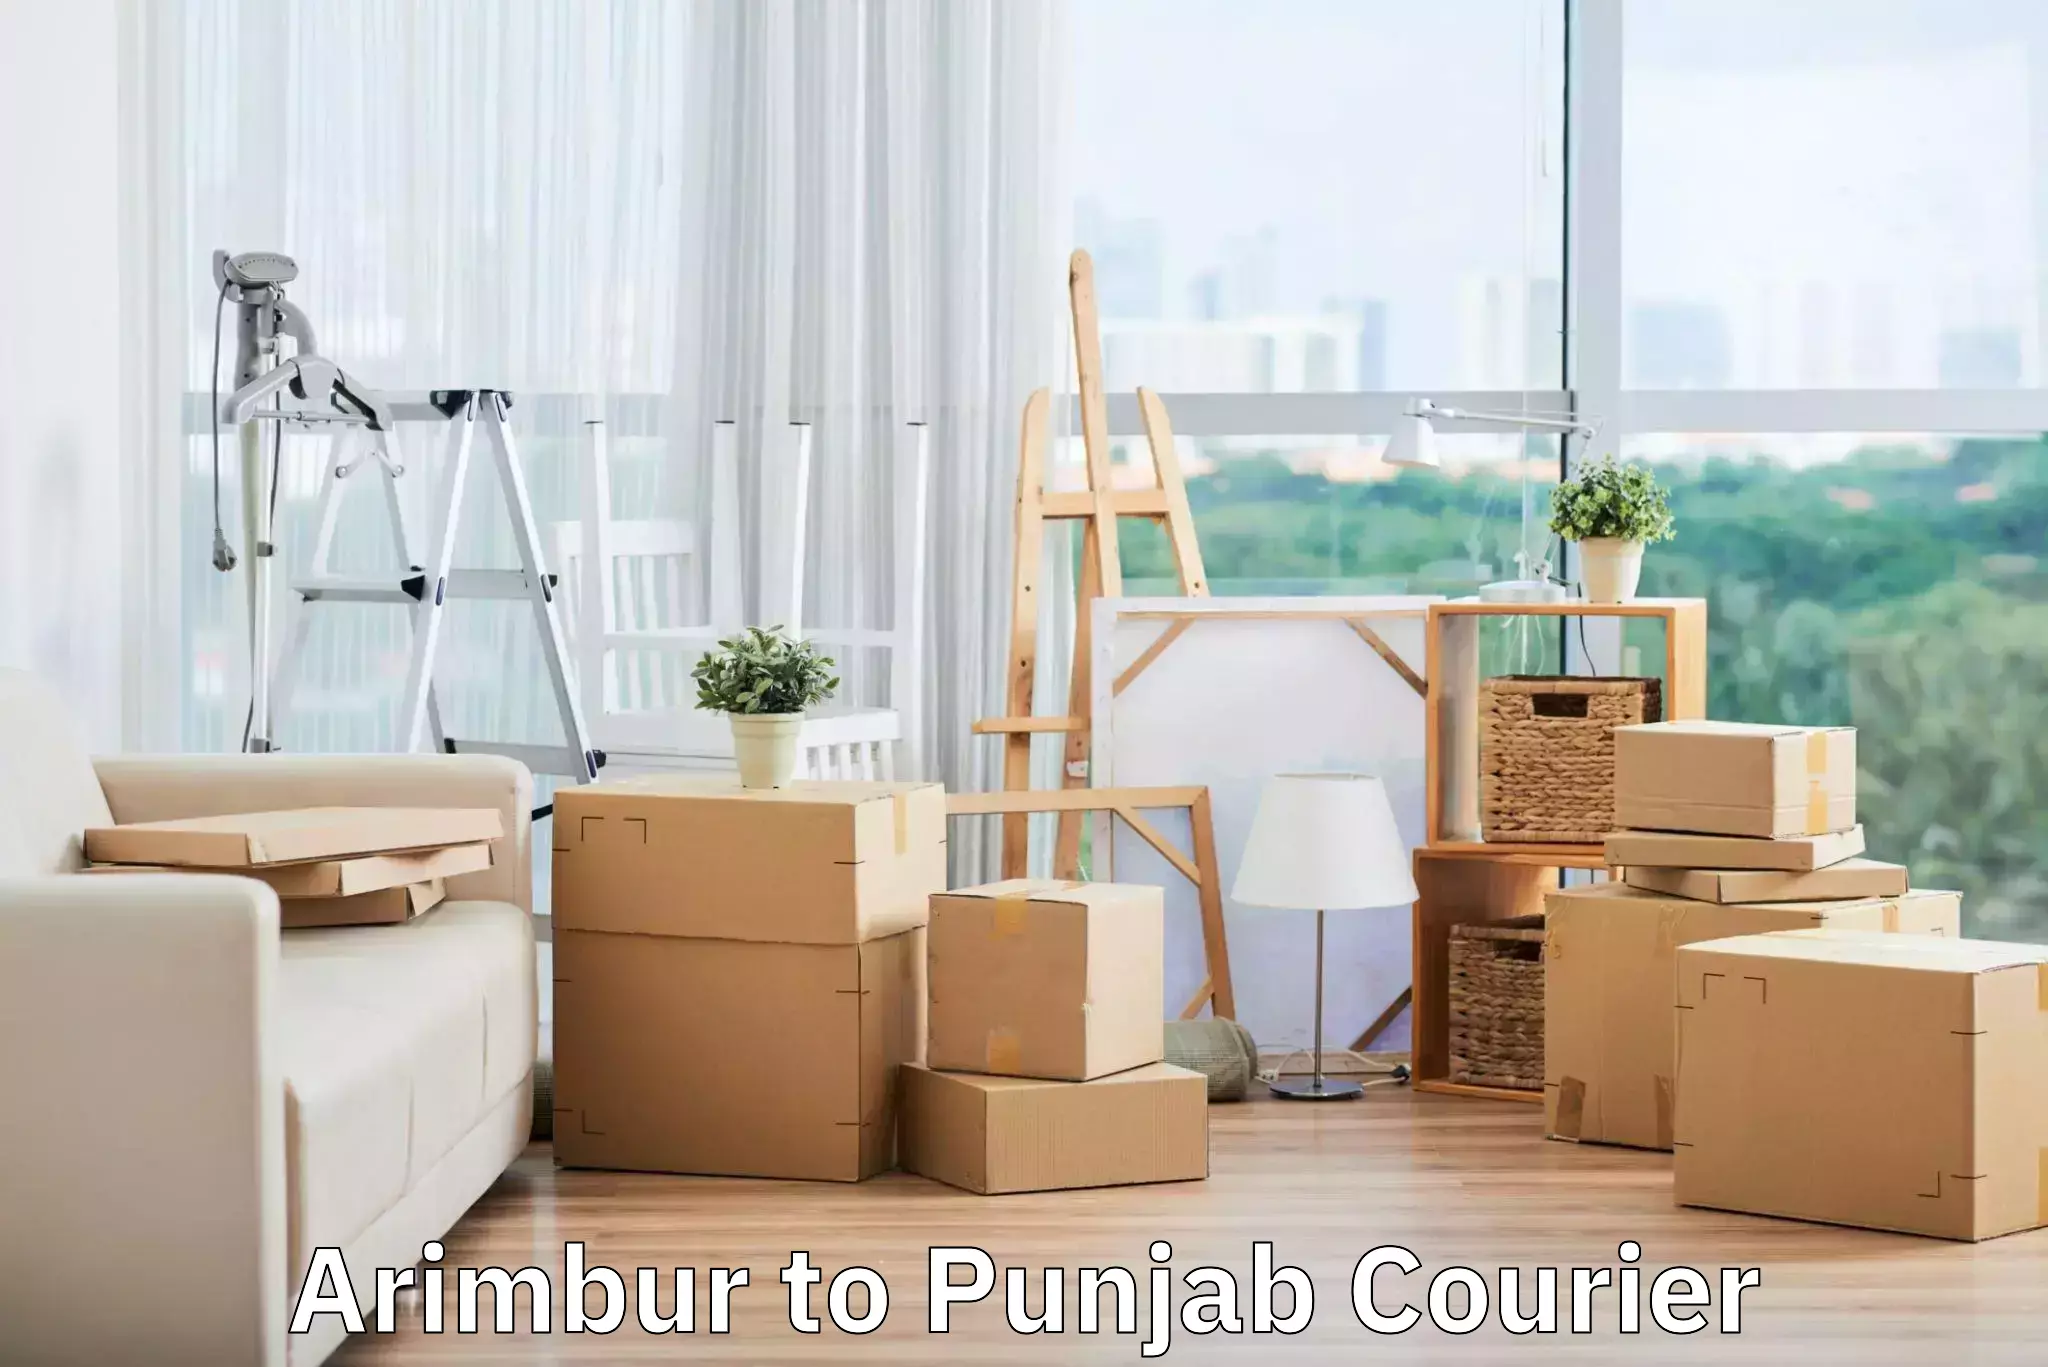 Luggage shipment specialists Arimbur to Punjab